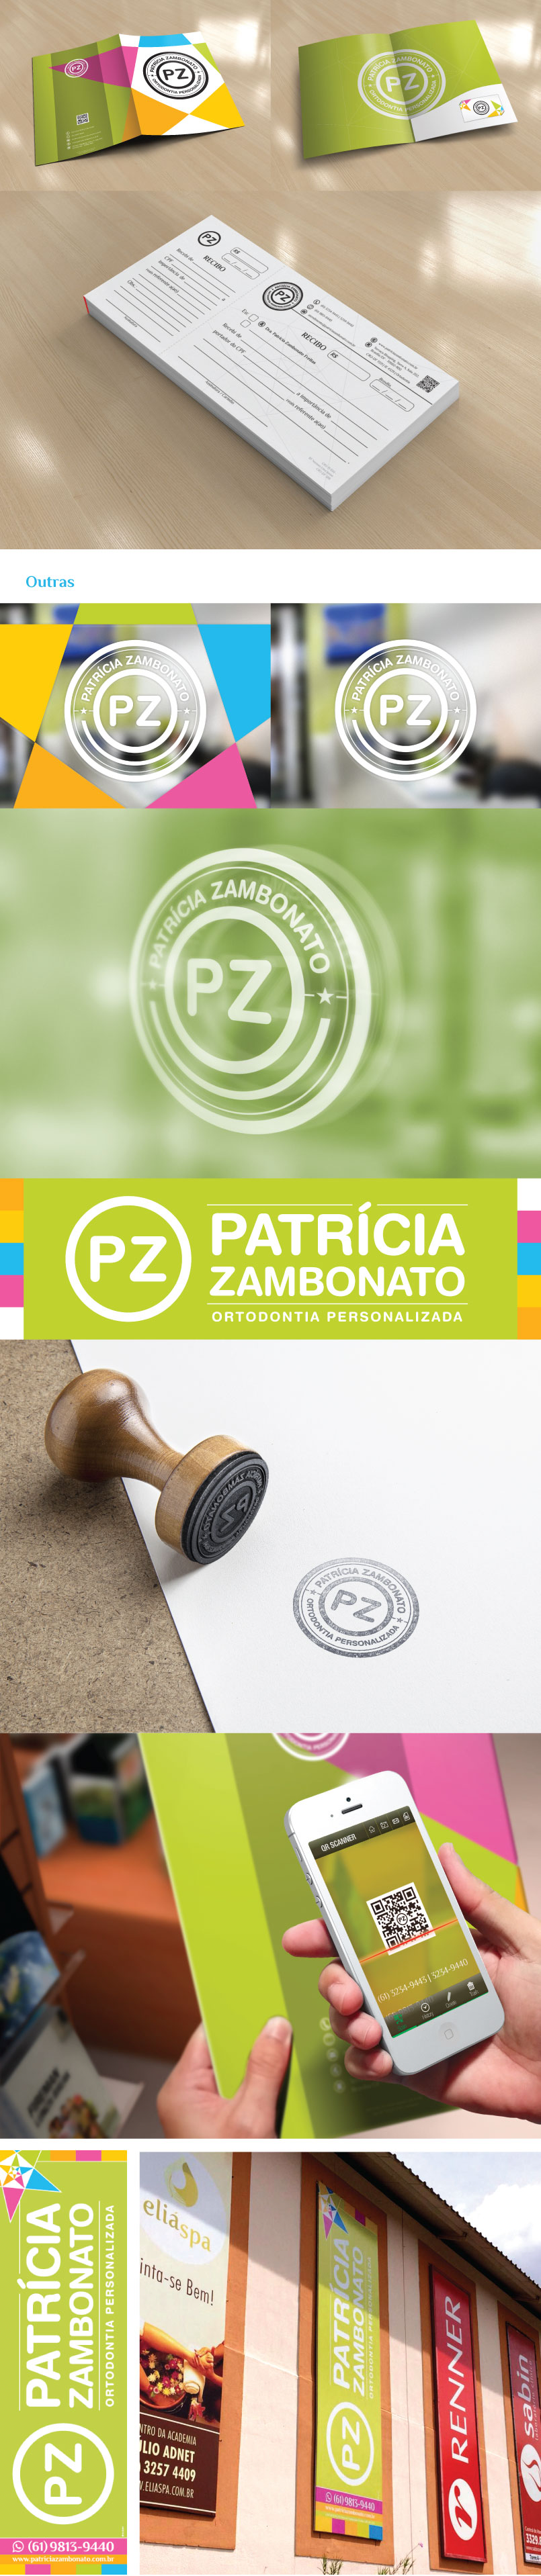 apresentacao-marca-patricia-zambonato-pz-4-01